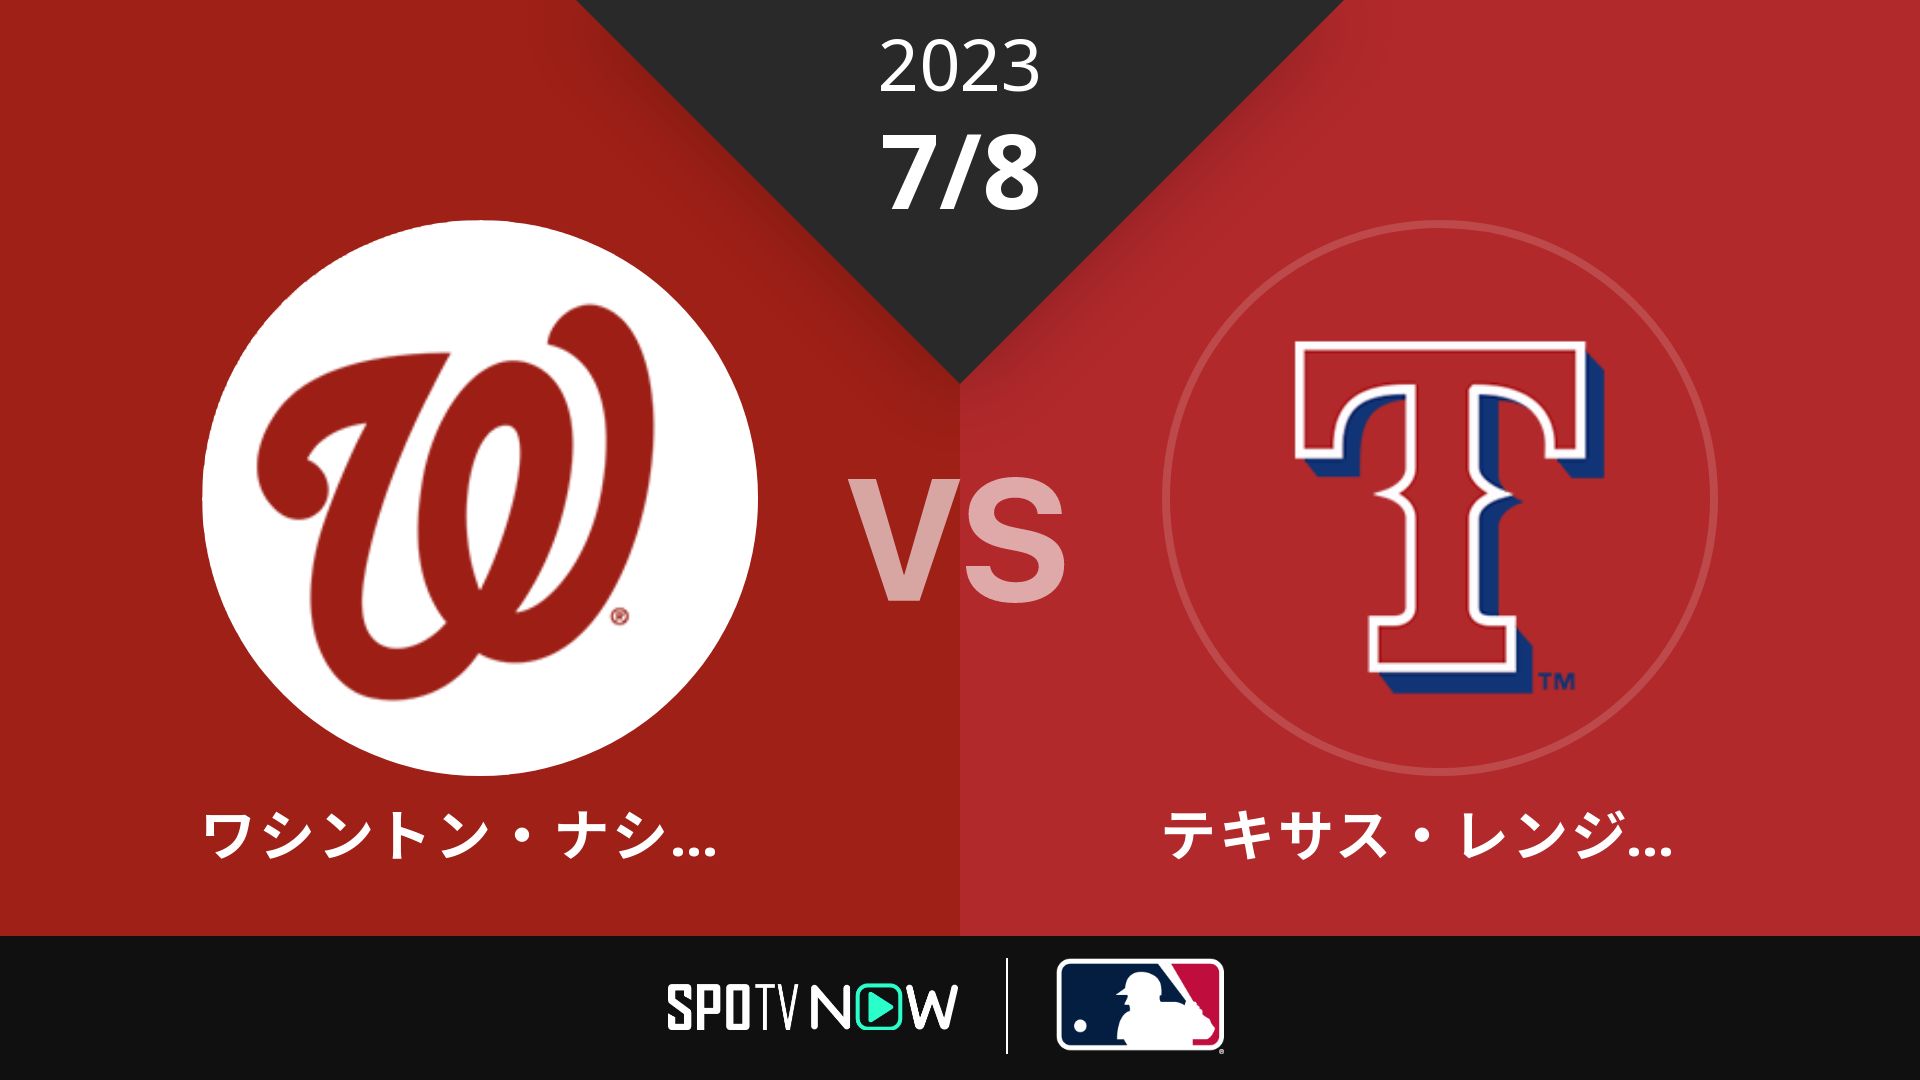 2023/7/8 ナショナルズ vs レンジャーズ [MLB]